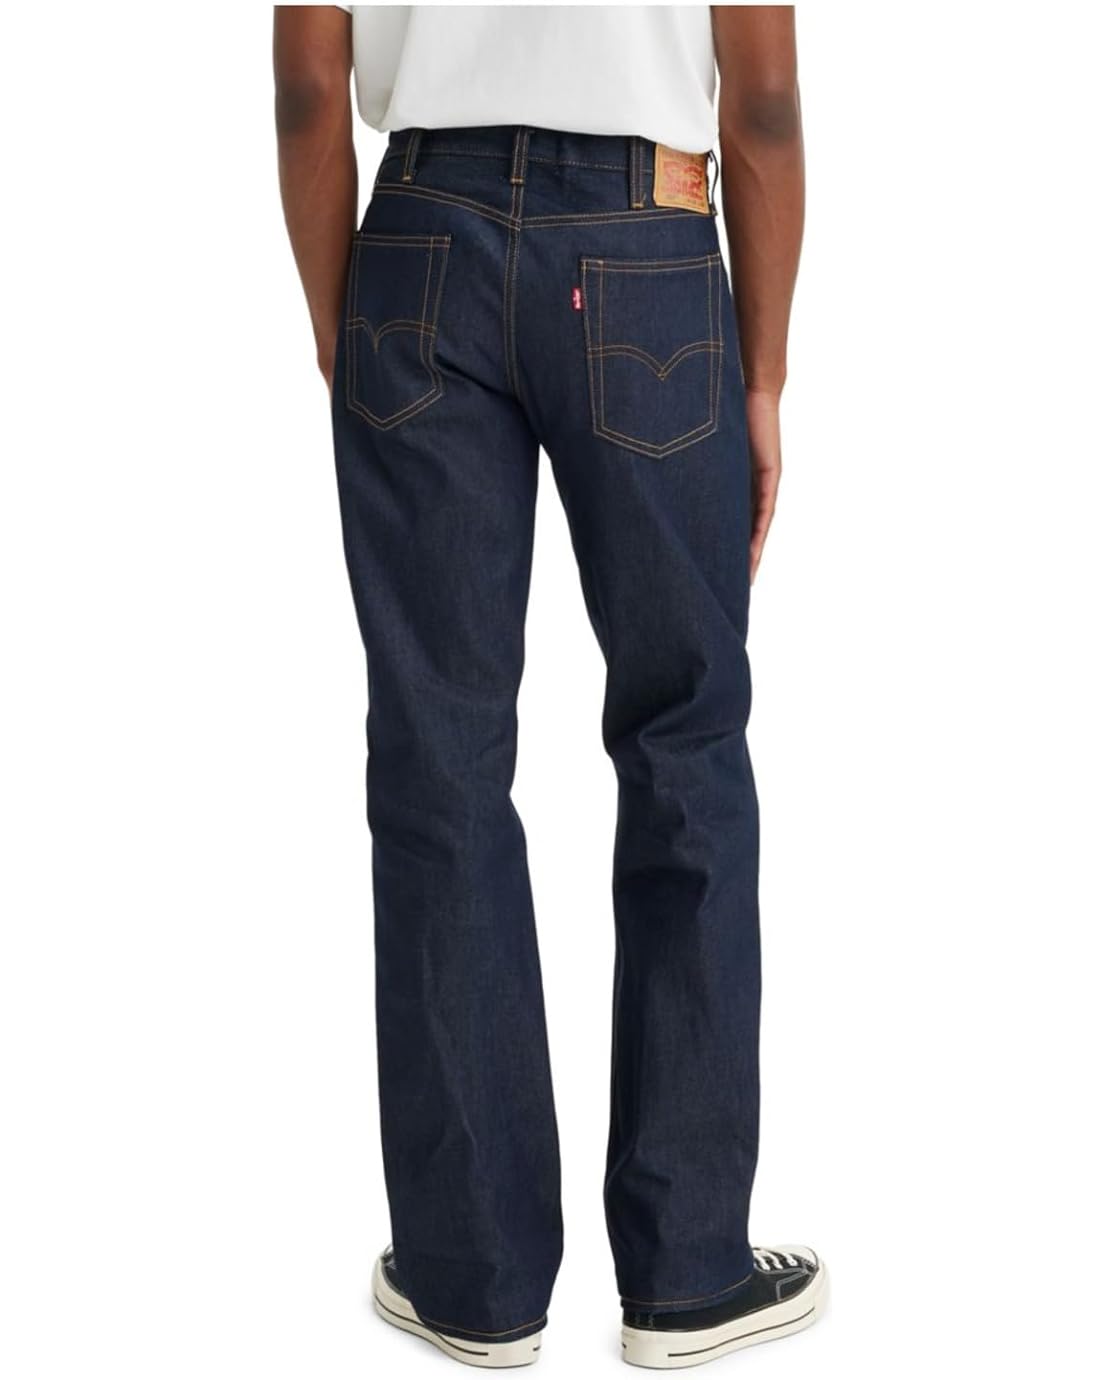  Levis Premium 517 Bootcut Jeans